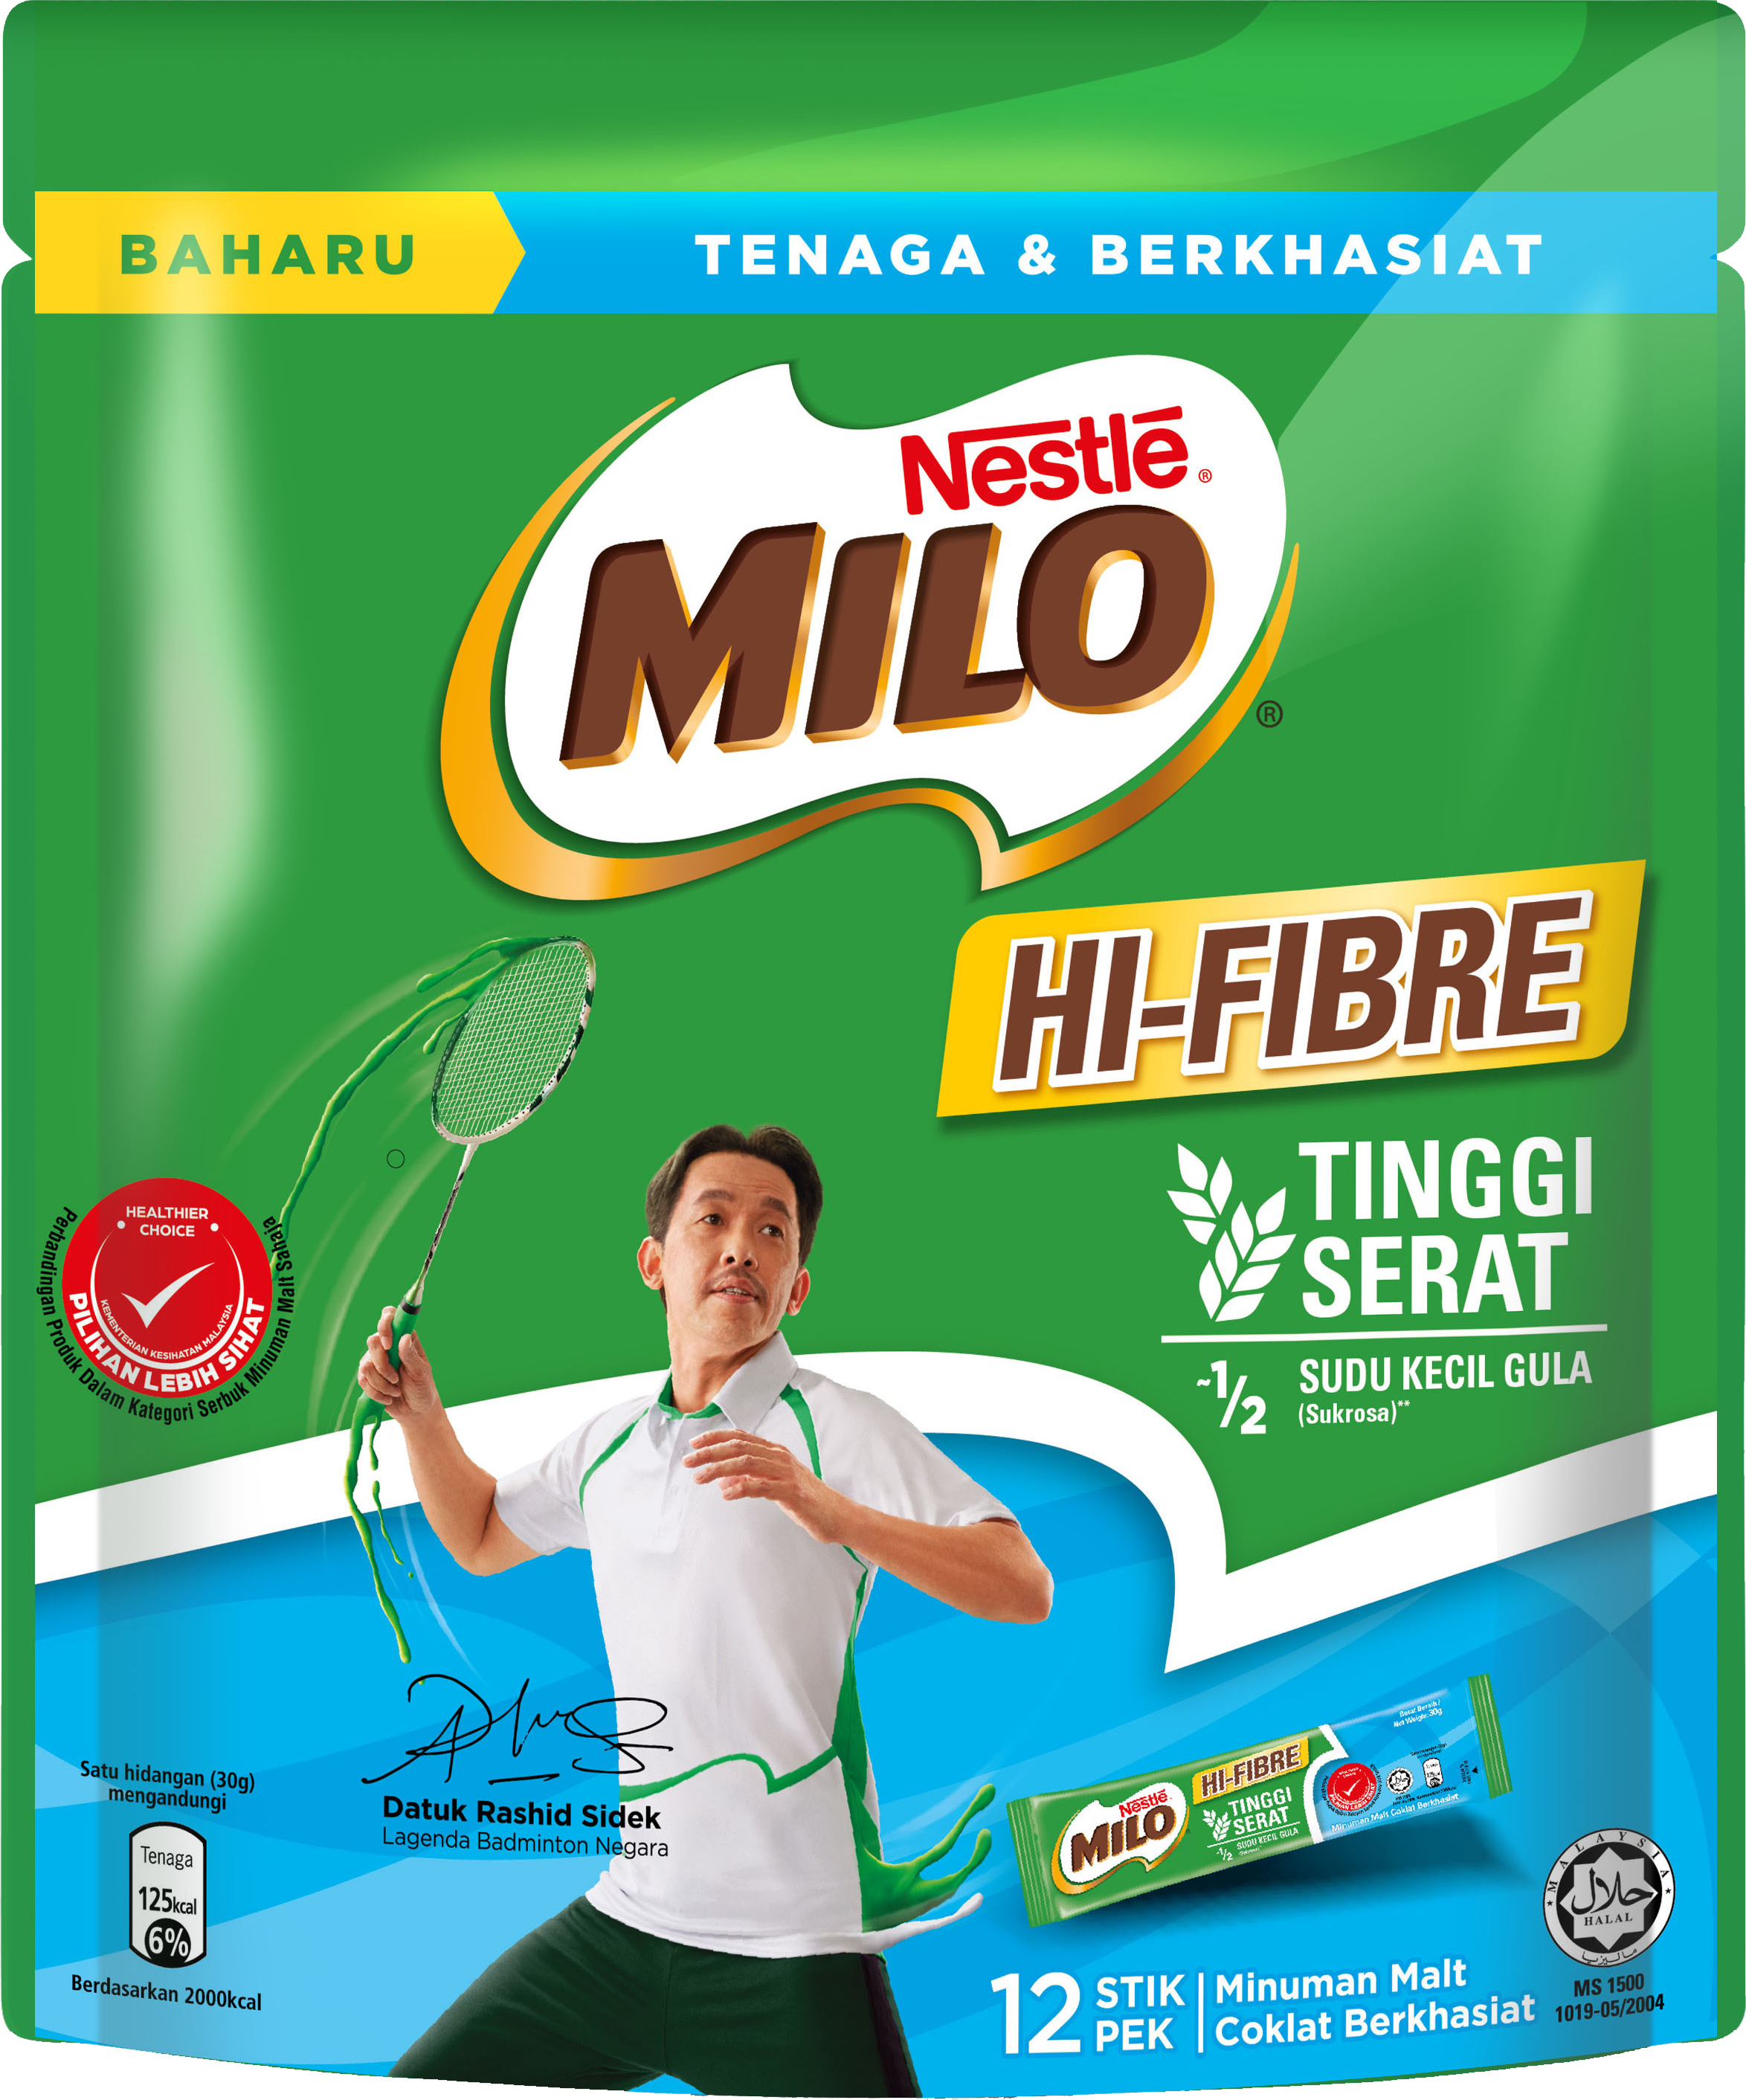 MILO® Hi-Fibre